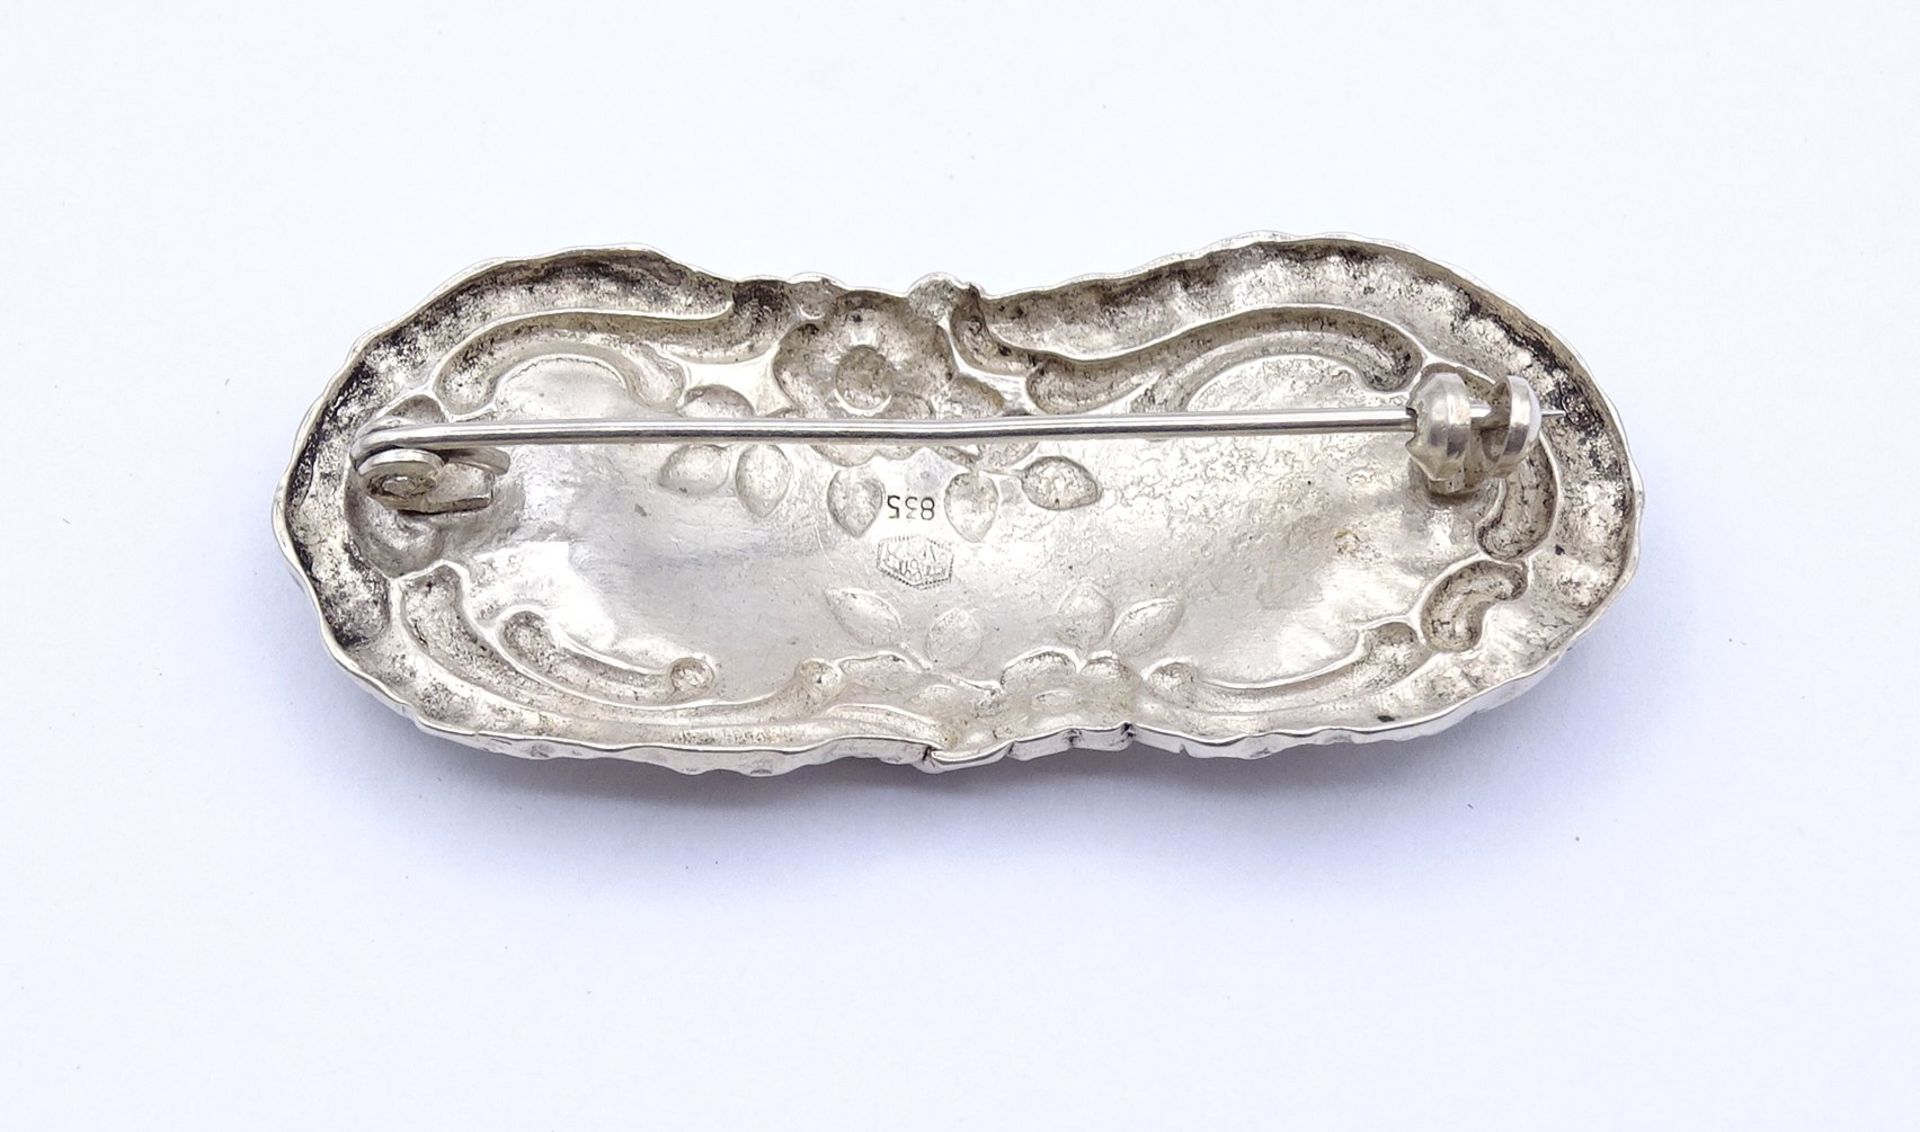 Alte Silber Brosche 835/000, 5,0x2,2cm, 7,0g. Befestigungsregler fehlt - Bild 3 aus 3